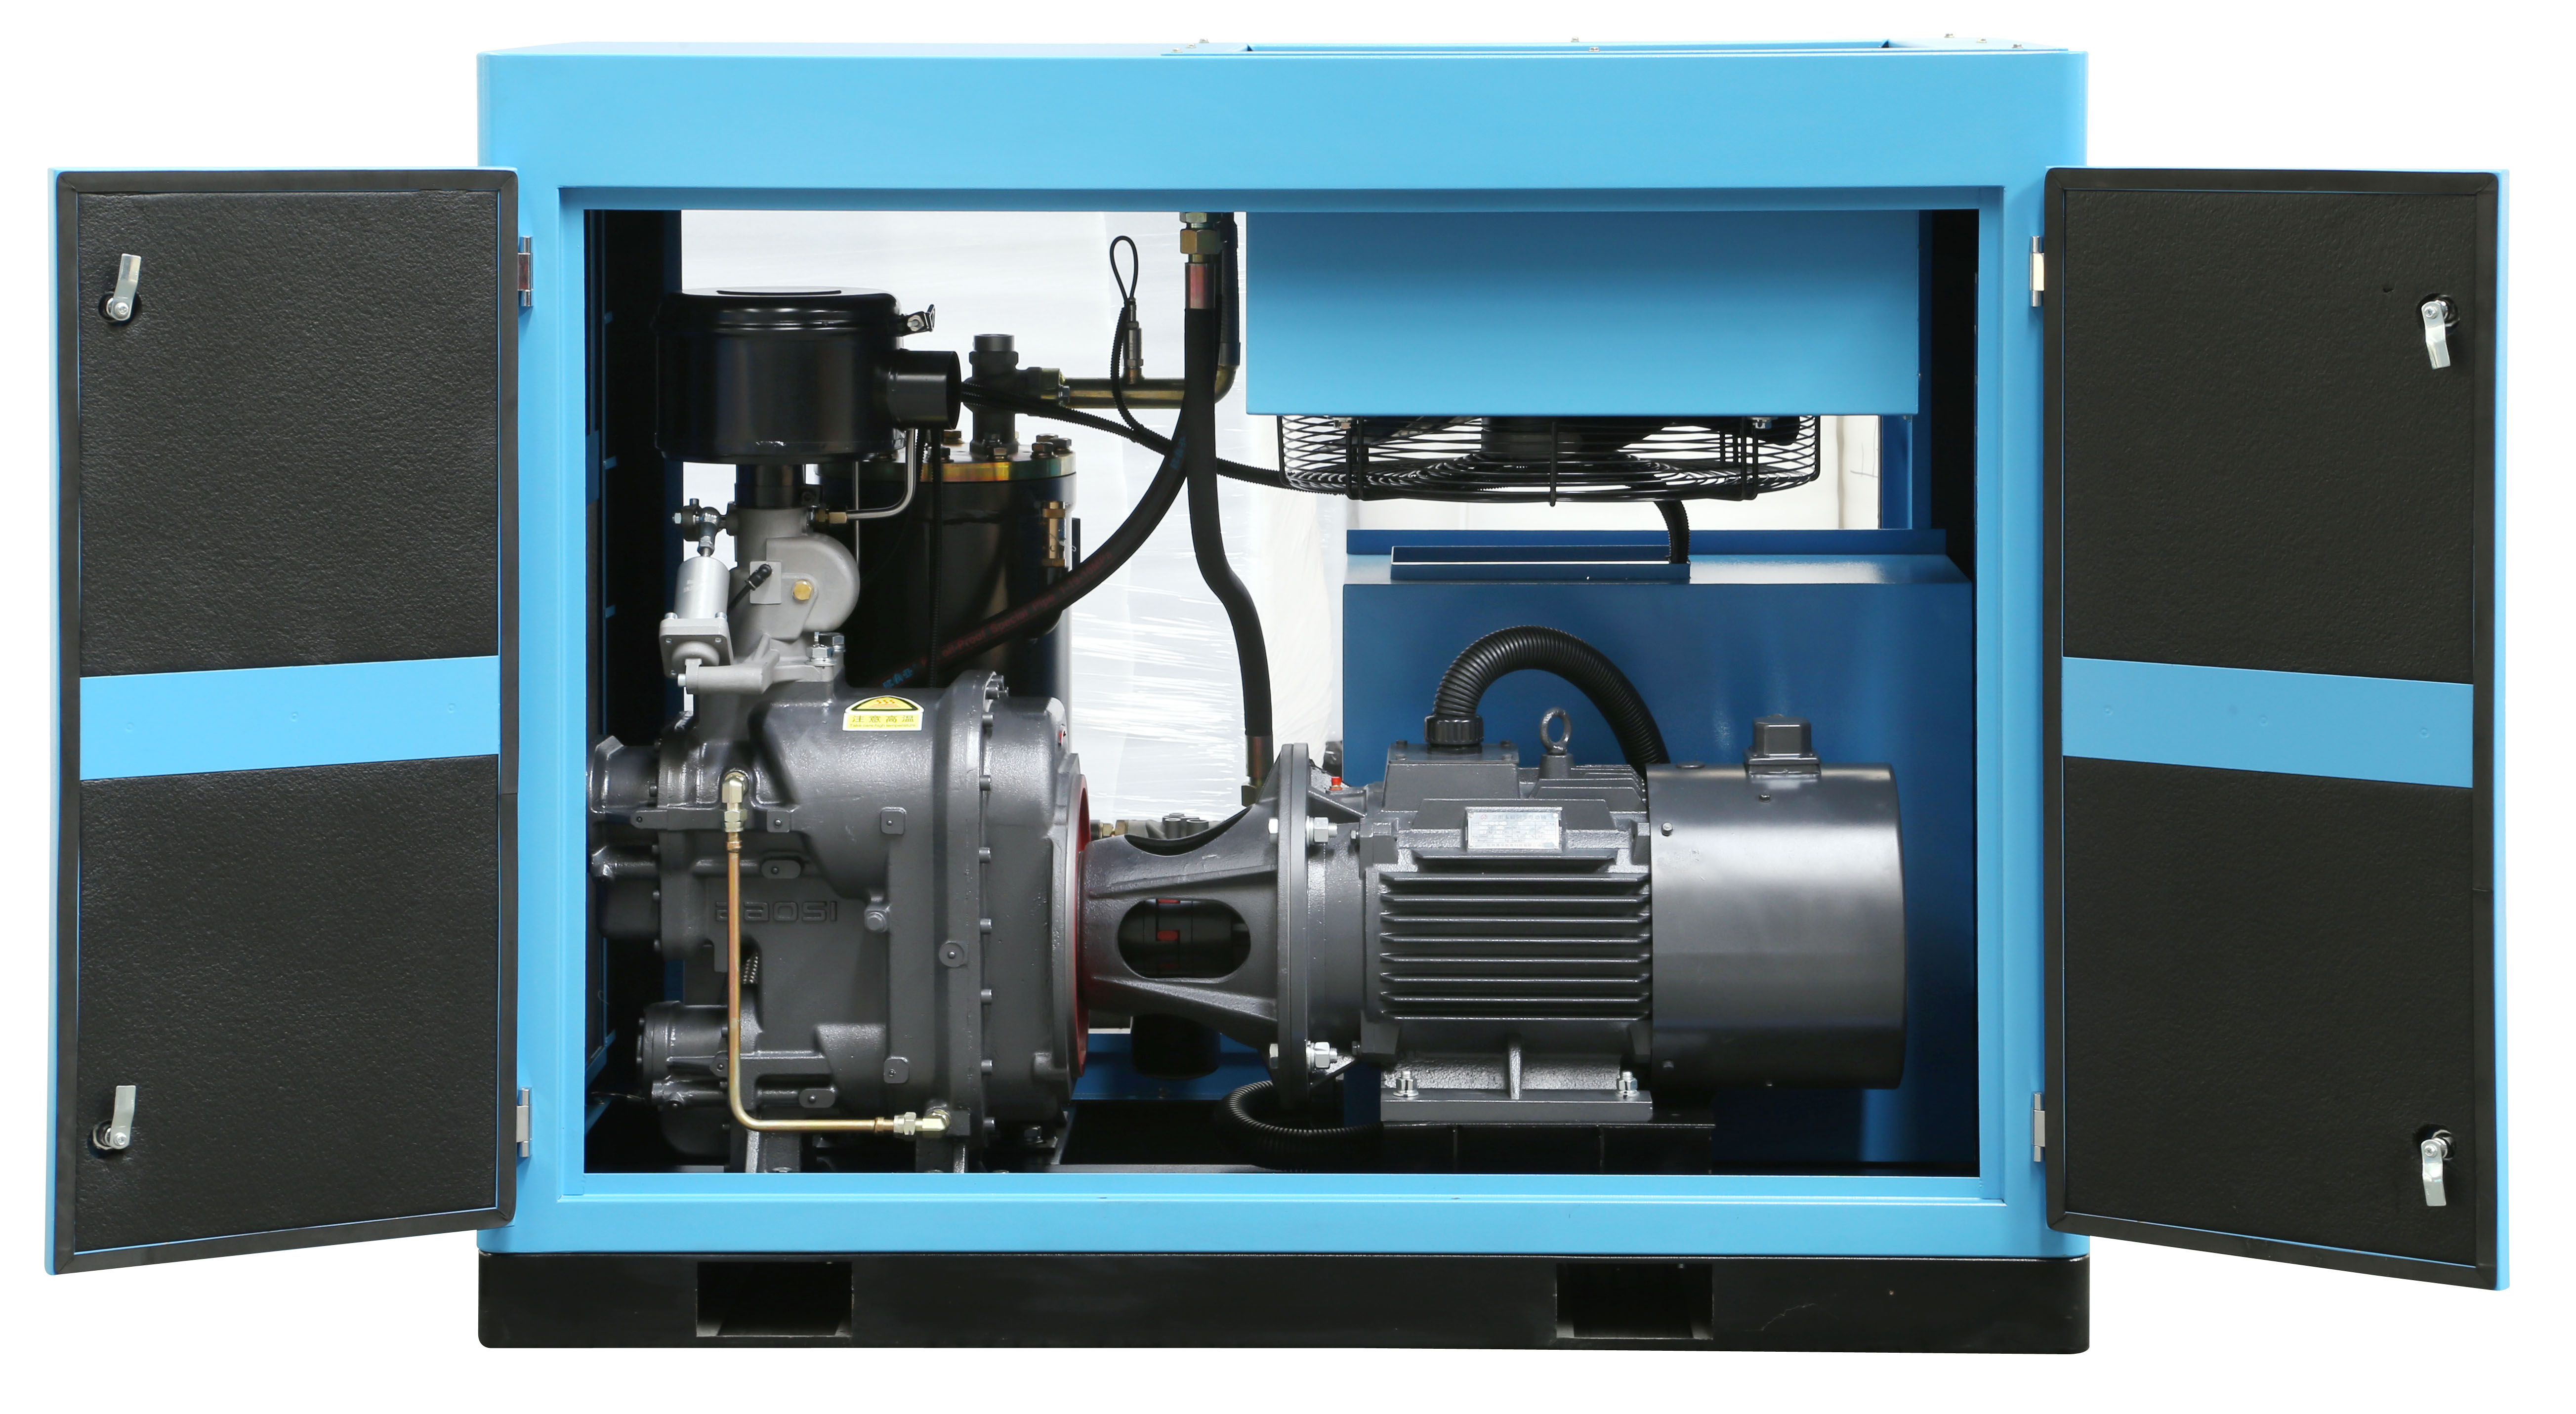 鲍斯GMFⅡ30-8永磁变频螺杆式空气压缩机 二级无油静音螺杆式空压机